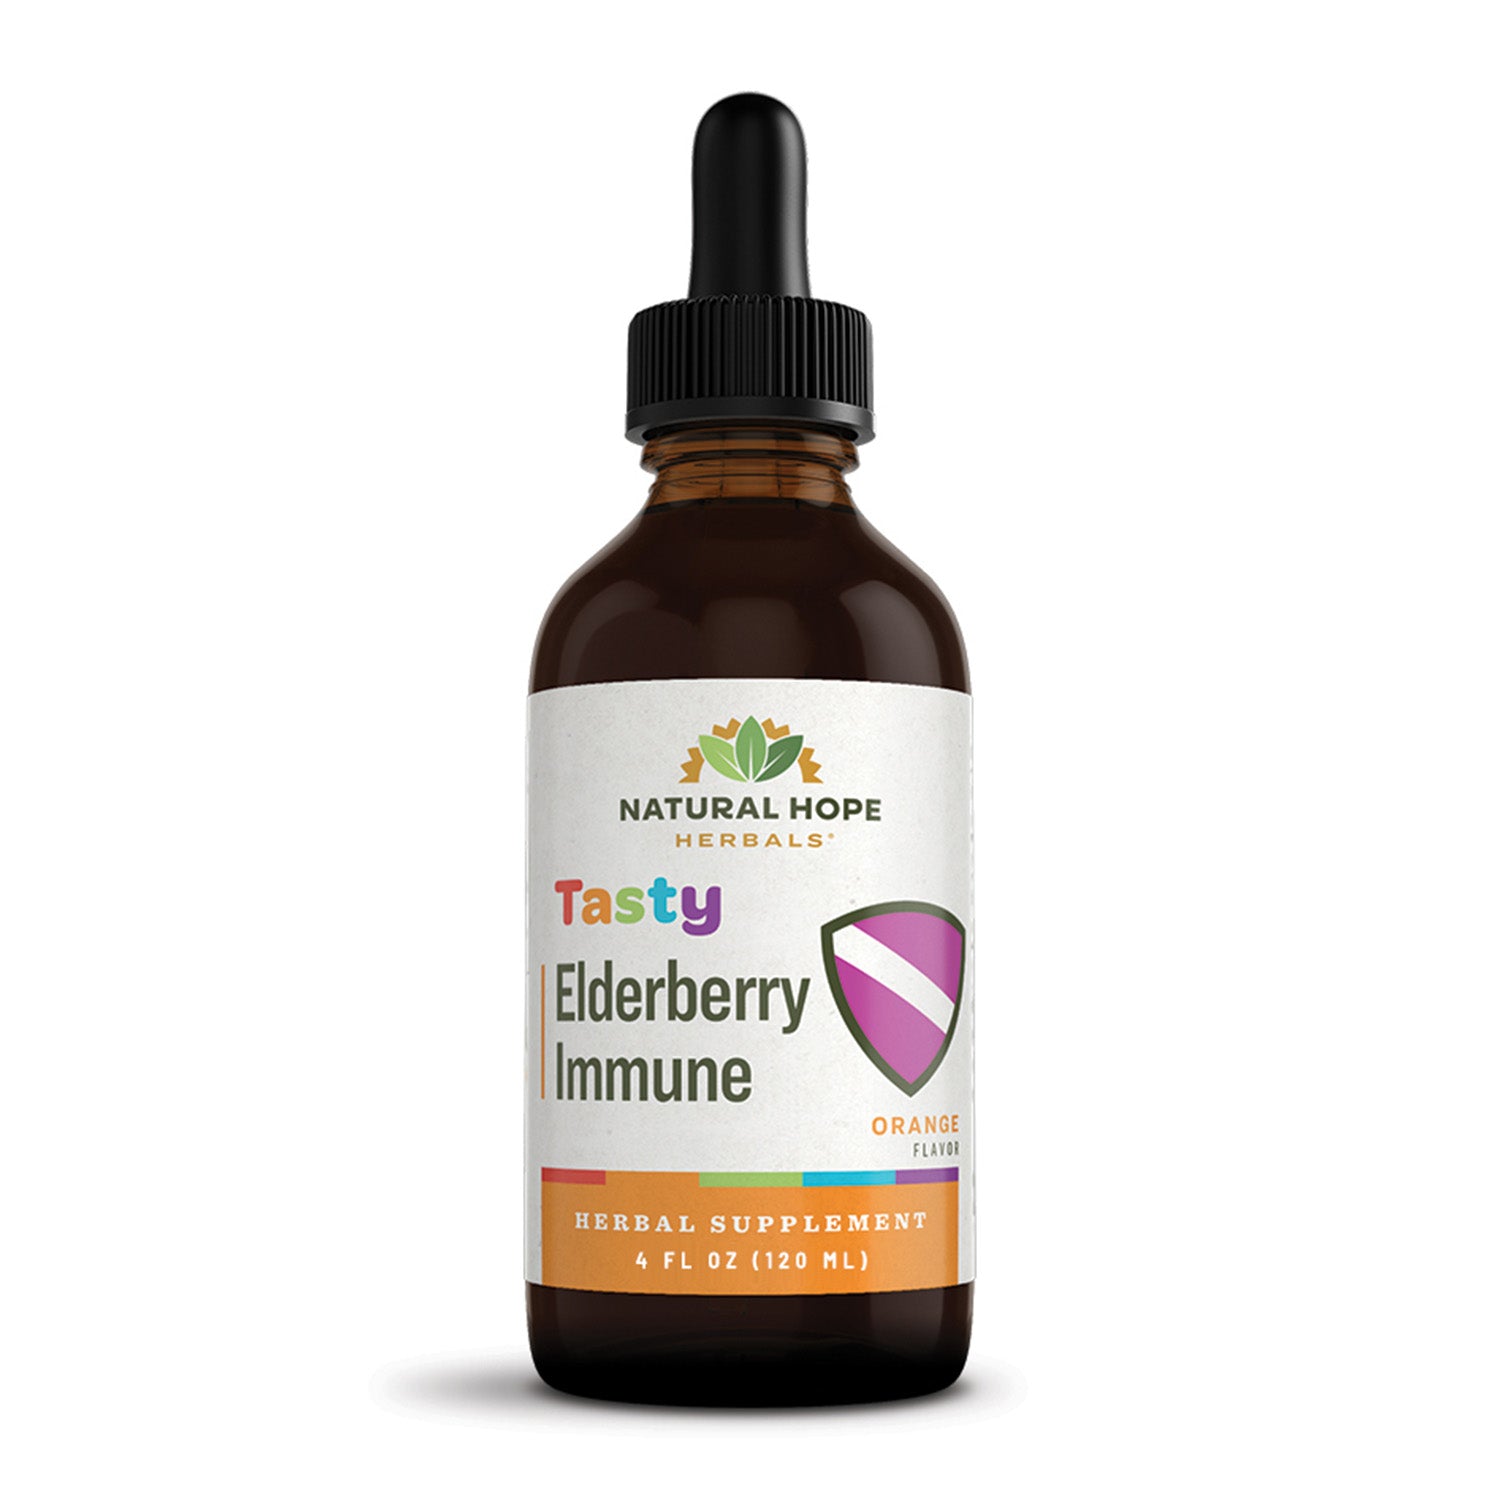 Tasty Elderberry Immune - Natural Hope Herbals